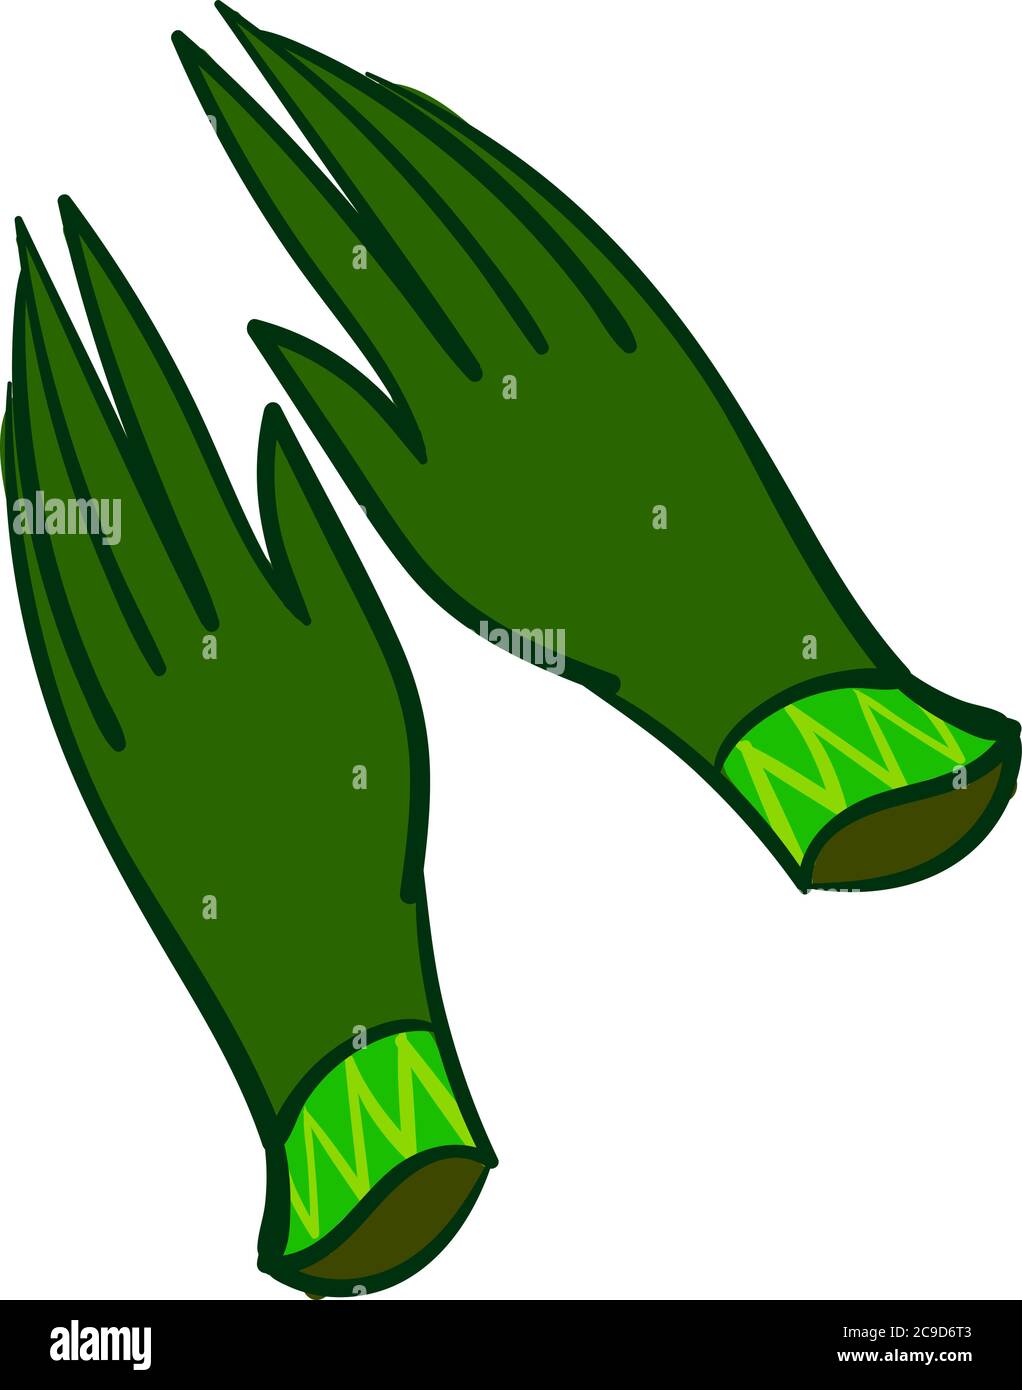 Green gloves, illustration, vector on white background Stock Vector